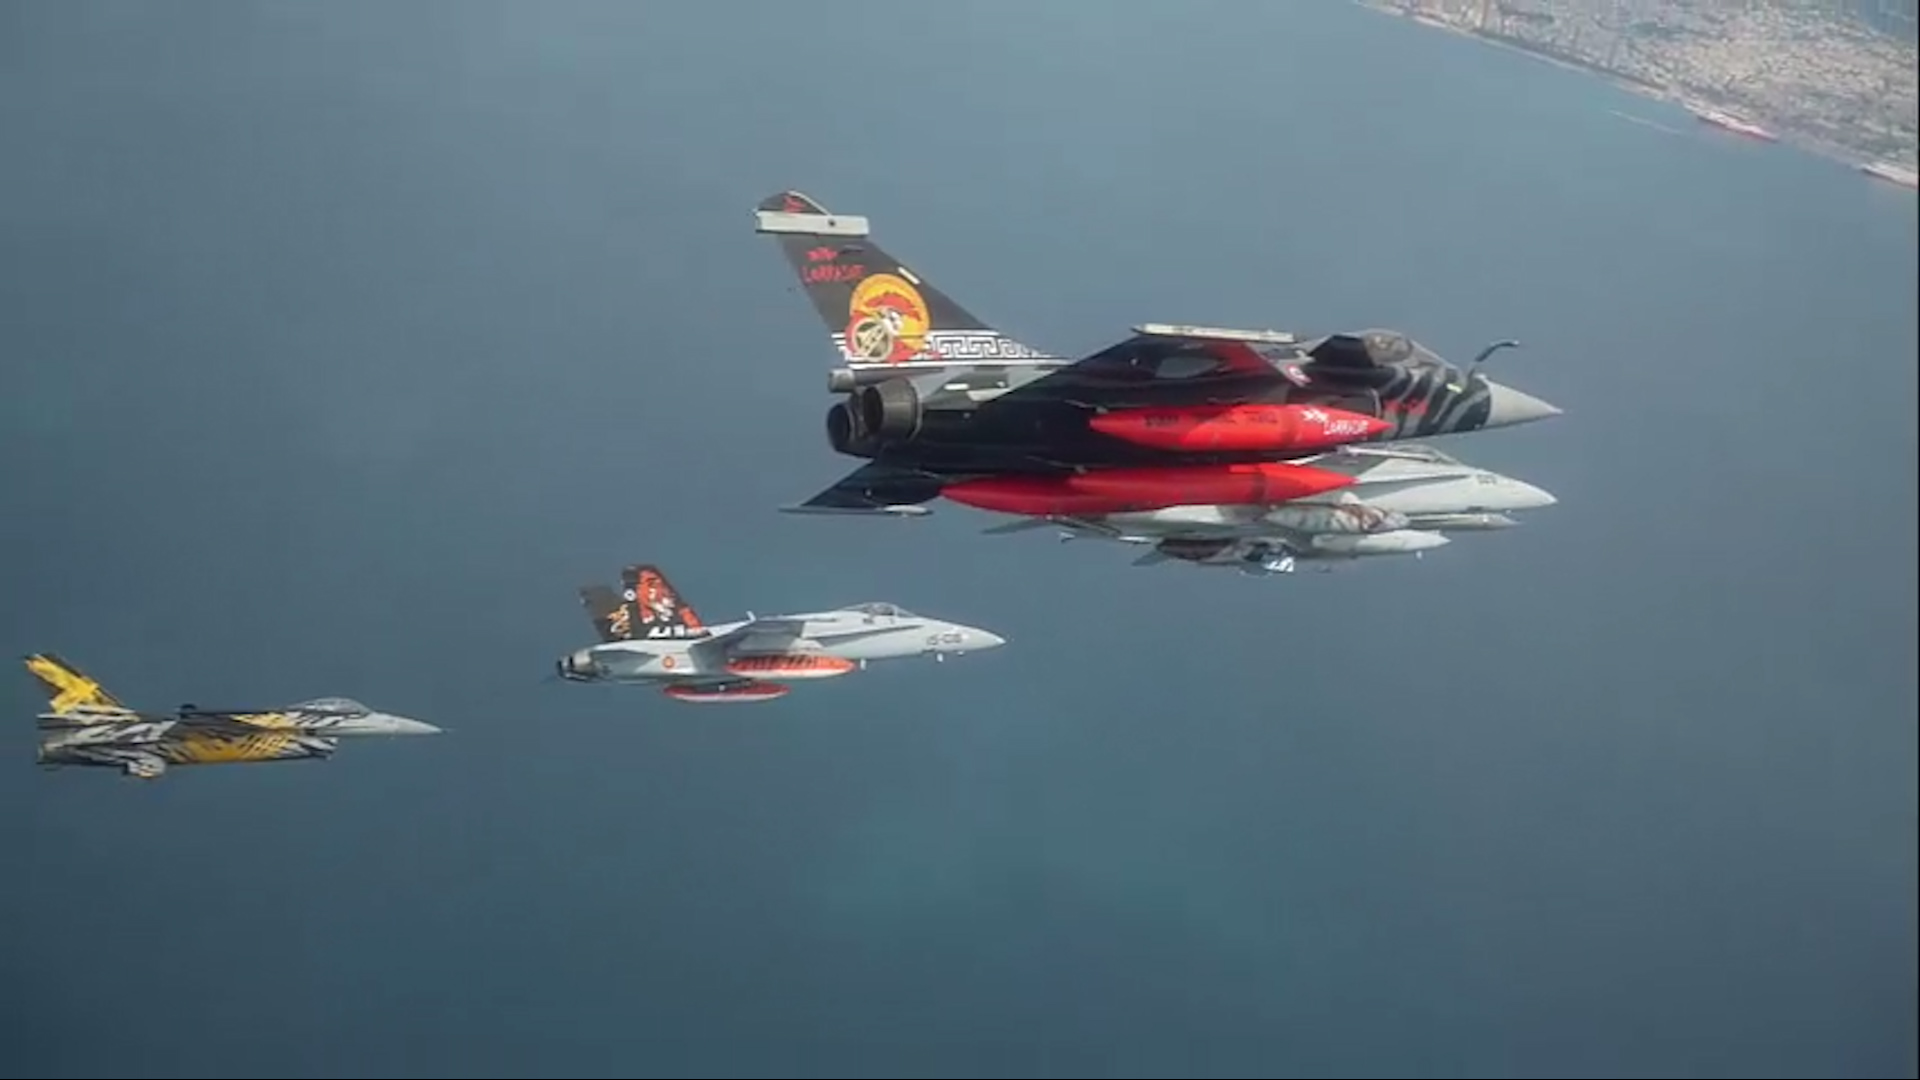 Άσκηση Tiger Meet 2022 : Μαχητικά αεροσκάση σε σχηματισμό πέταξαν πάνω από την Ακρόπολη (video)